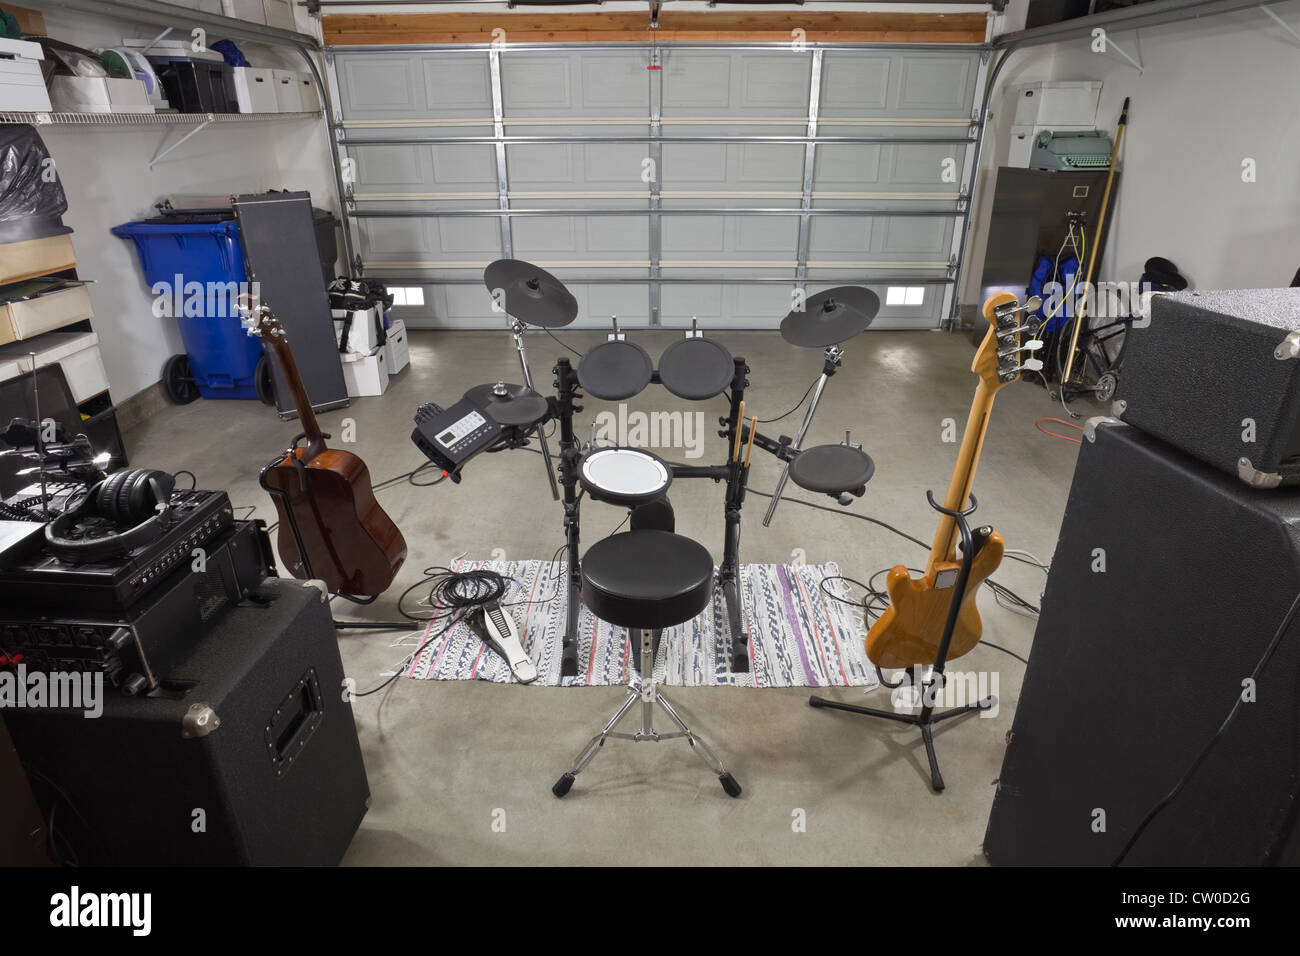 Garage-Rock-Band-Musik-Equipment. Backstage-Ansicht. Stockfoto